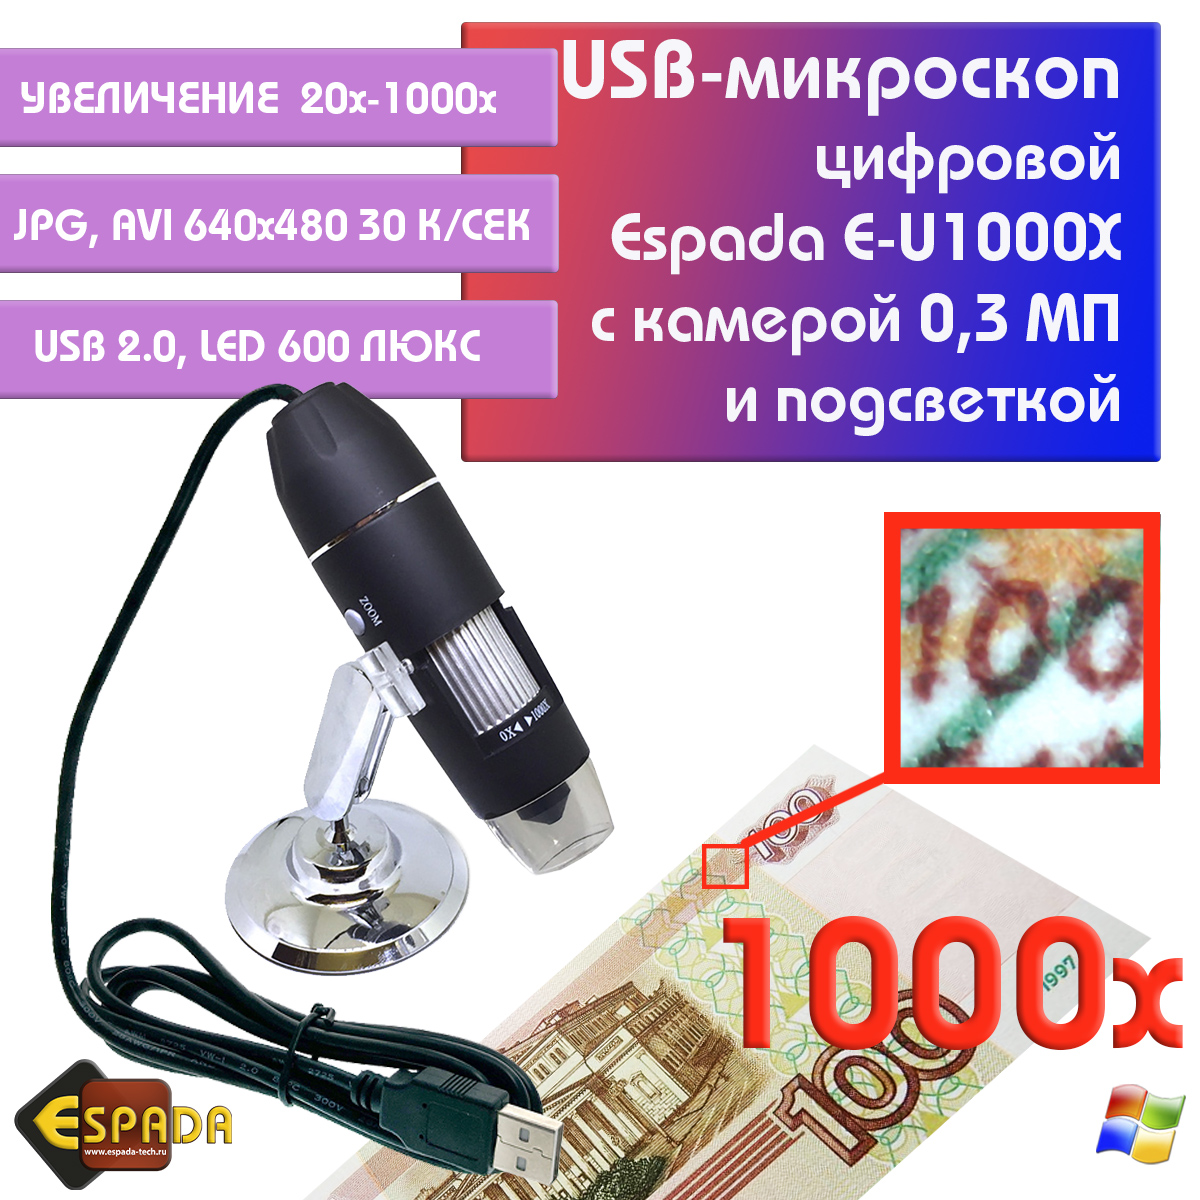 Портативный цифровой USB-микроскоп Espada E-U1000X c камерой 0,3 МП и увеличением 1000x видеокарта kfa2 pcie16 rtx3060ti 8g gddr6x 36ism6md1gsk